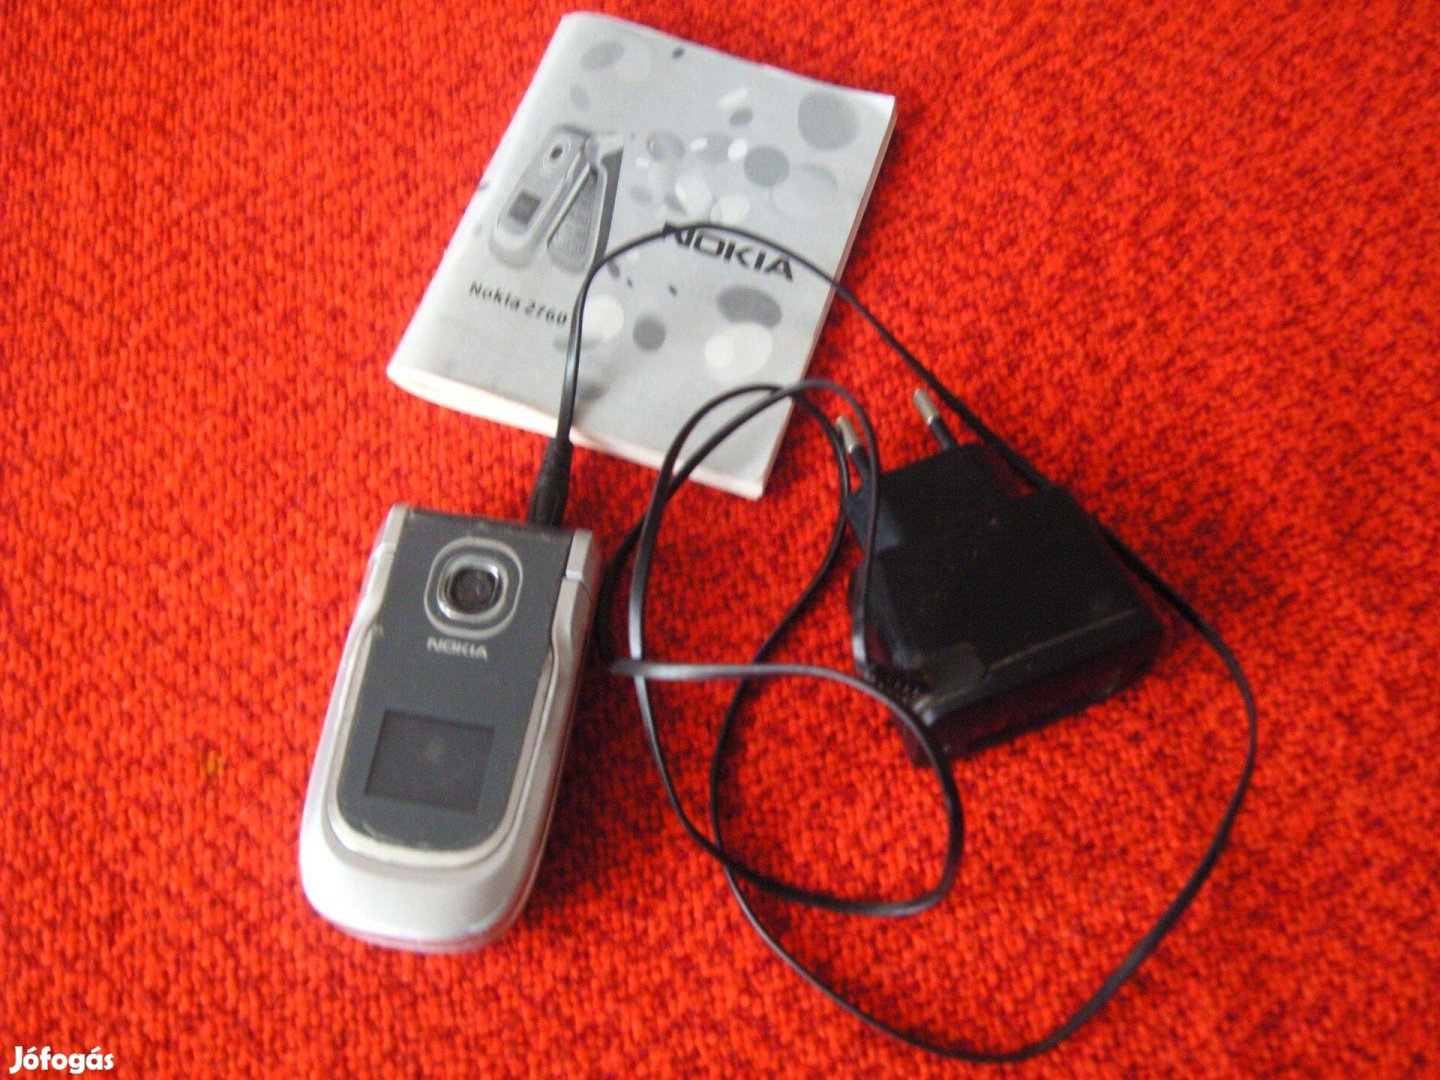 Retró Nokia telefon töltővel, tájékoztatóval. Gyűjtőknek